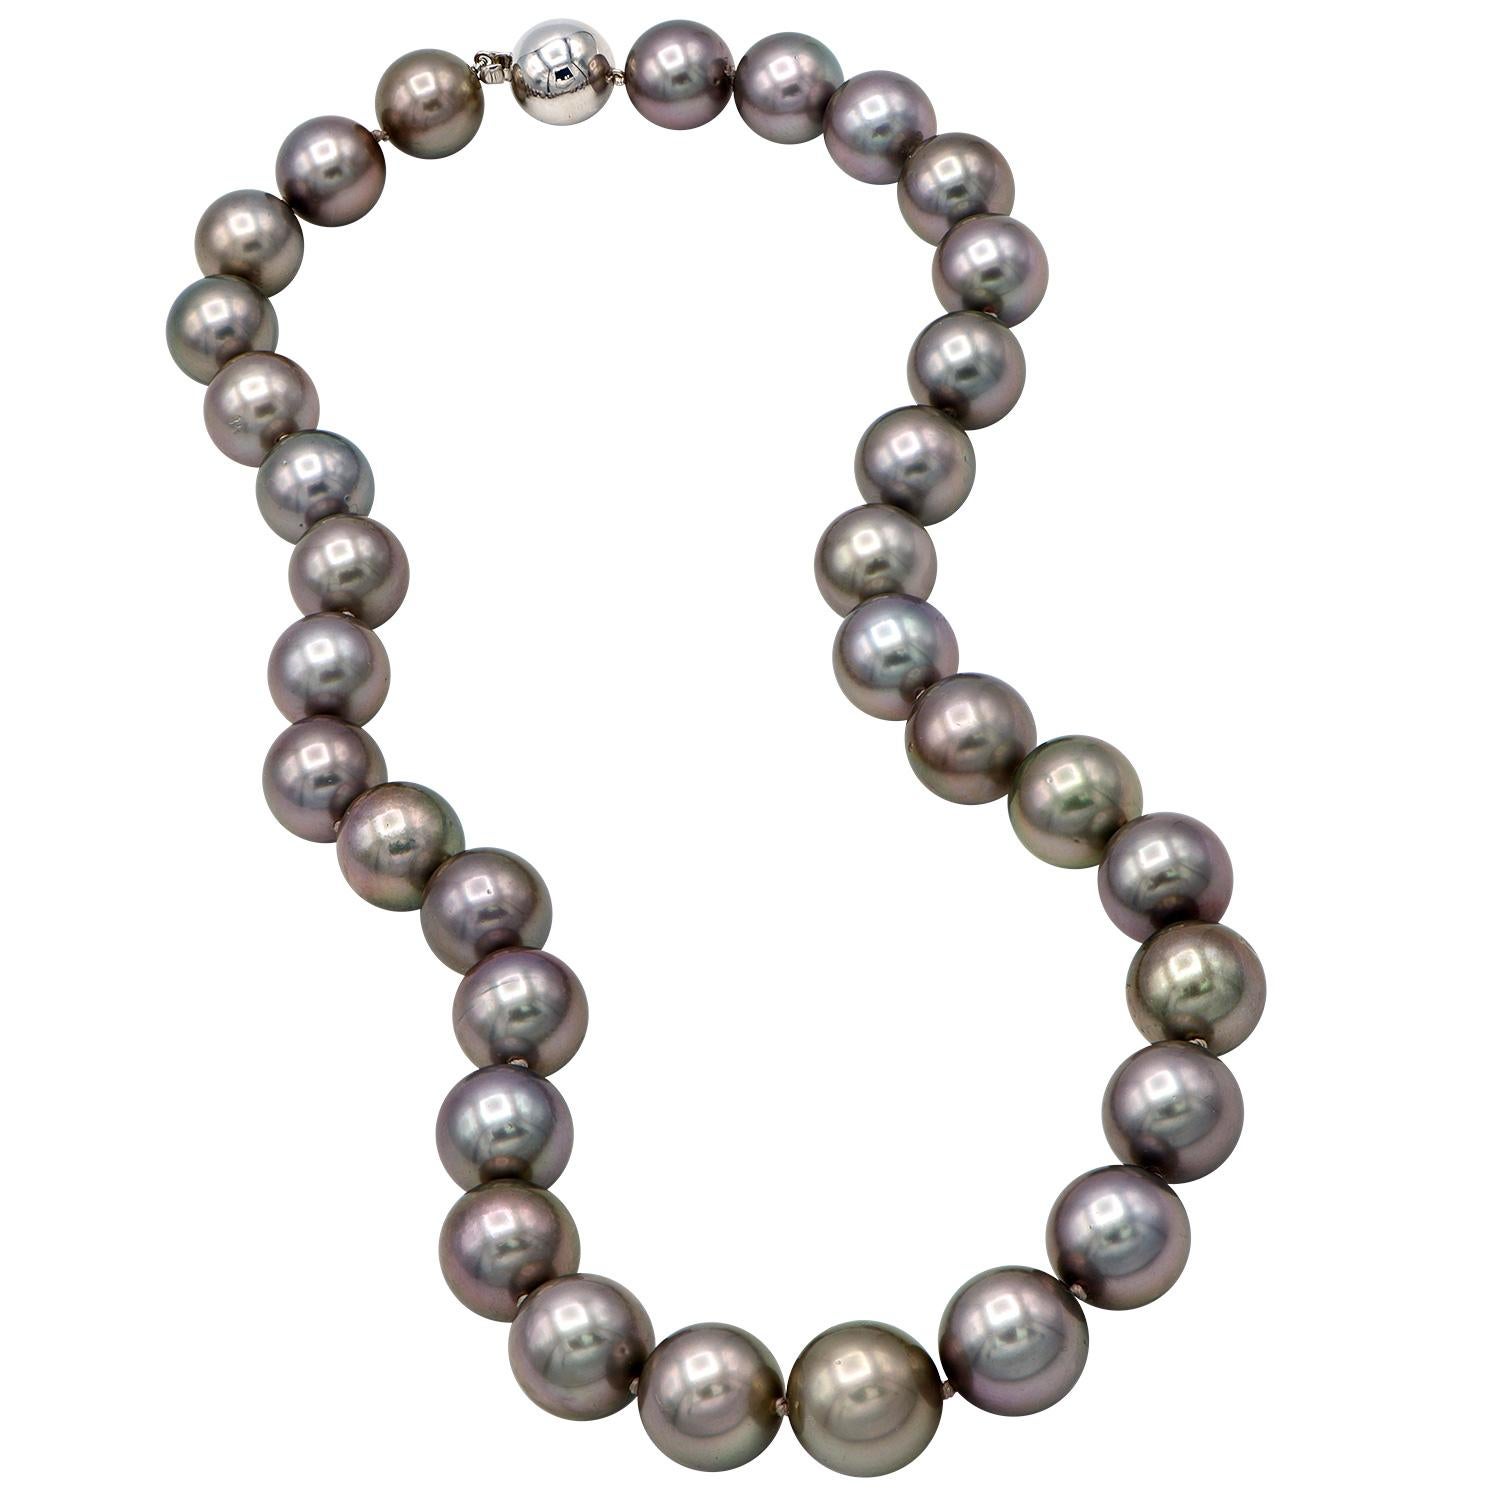 Diese wunderschöne schwarze Tahiti-Perlenkette mit rosa Untertönen ist atemberaubend. Diese 12-14,2 mm großen Perlen bilden einen 18 Zoll langen Strang aus 33 Perlen. Die Perlen sind fachmännisch mit einem Doppelknoten zwischen den einzelnen Perlen